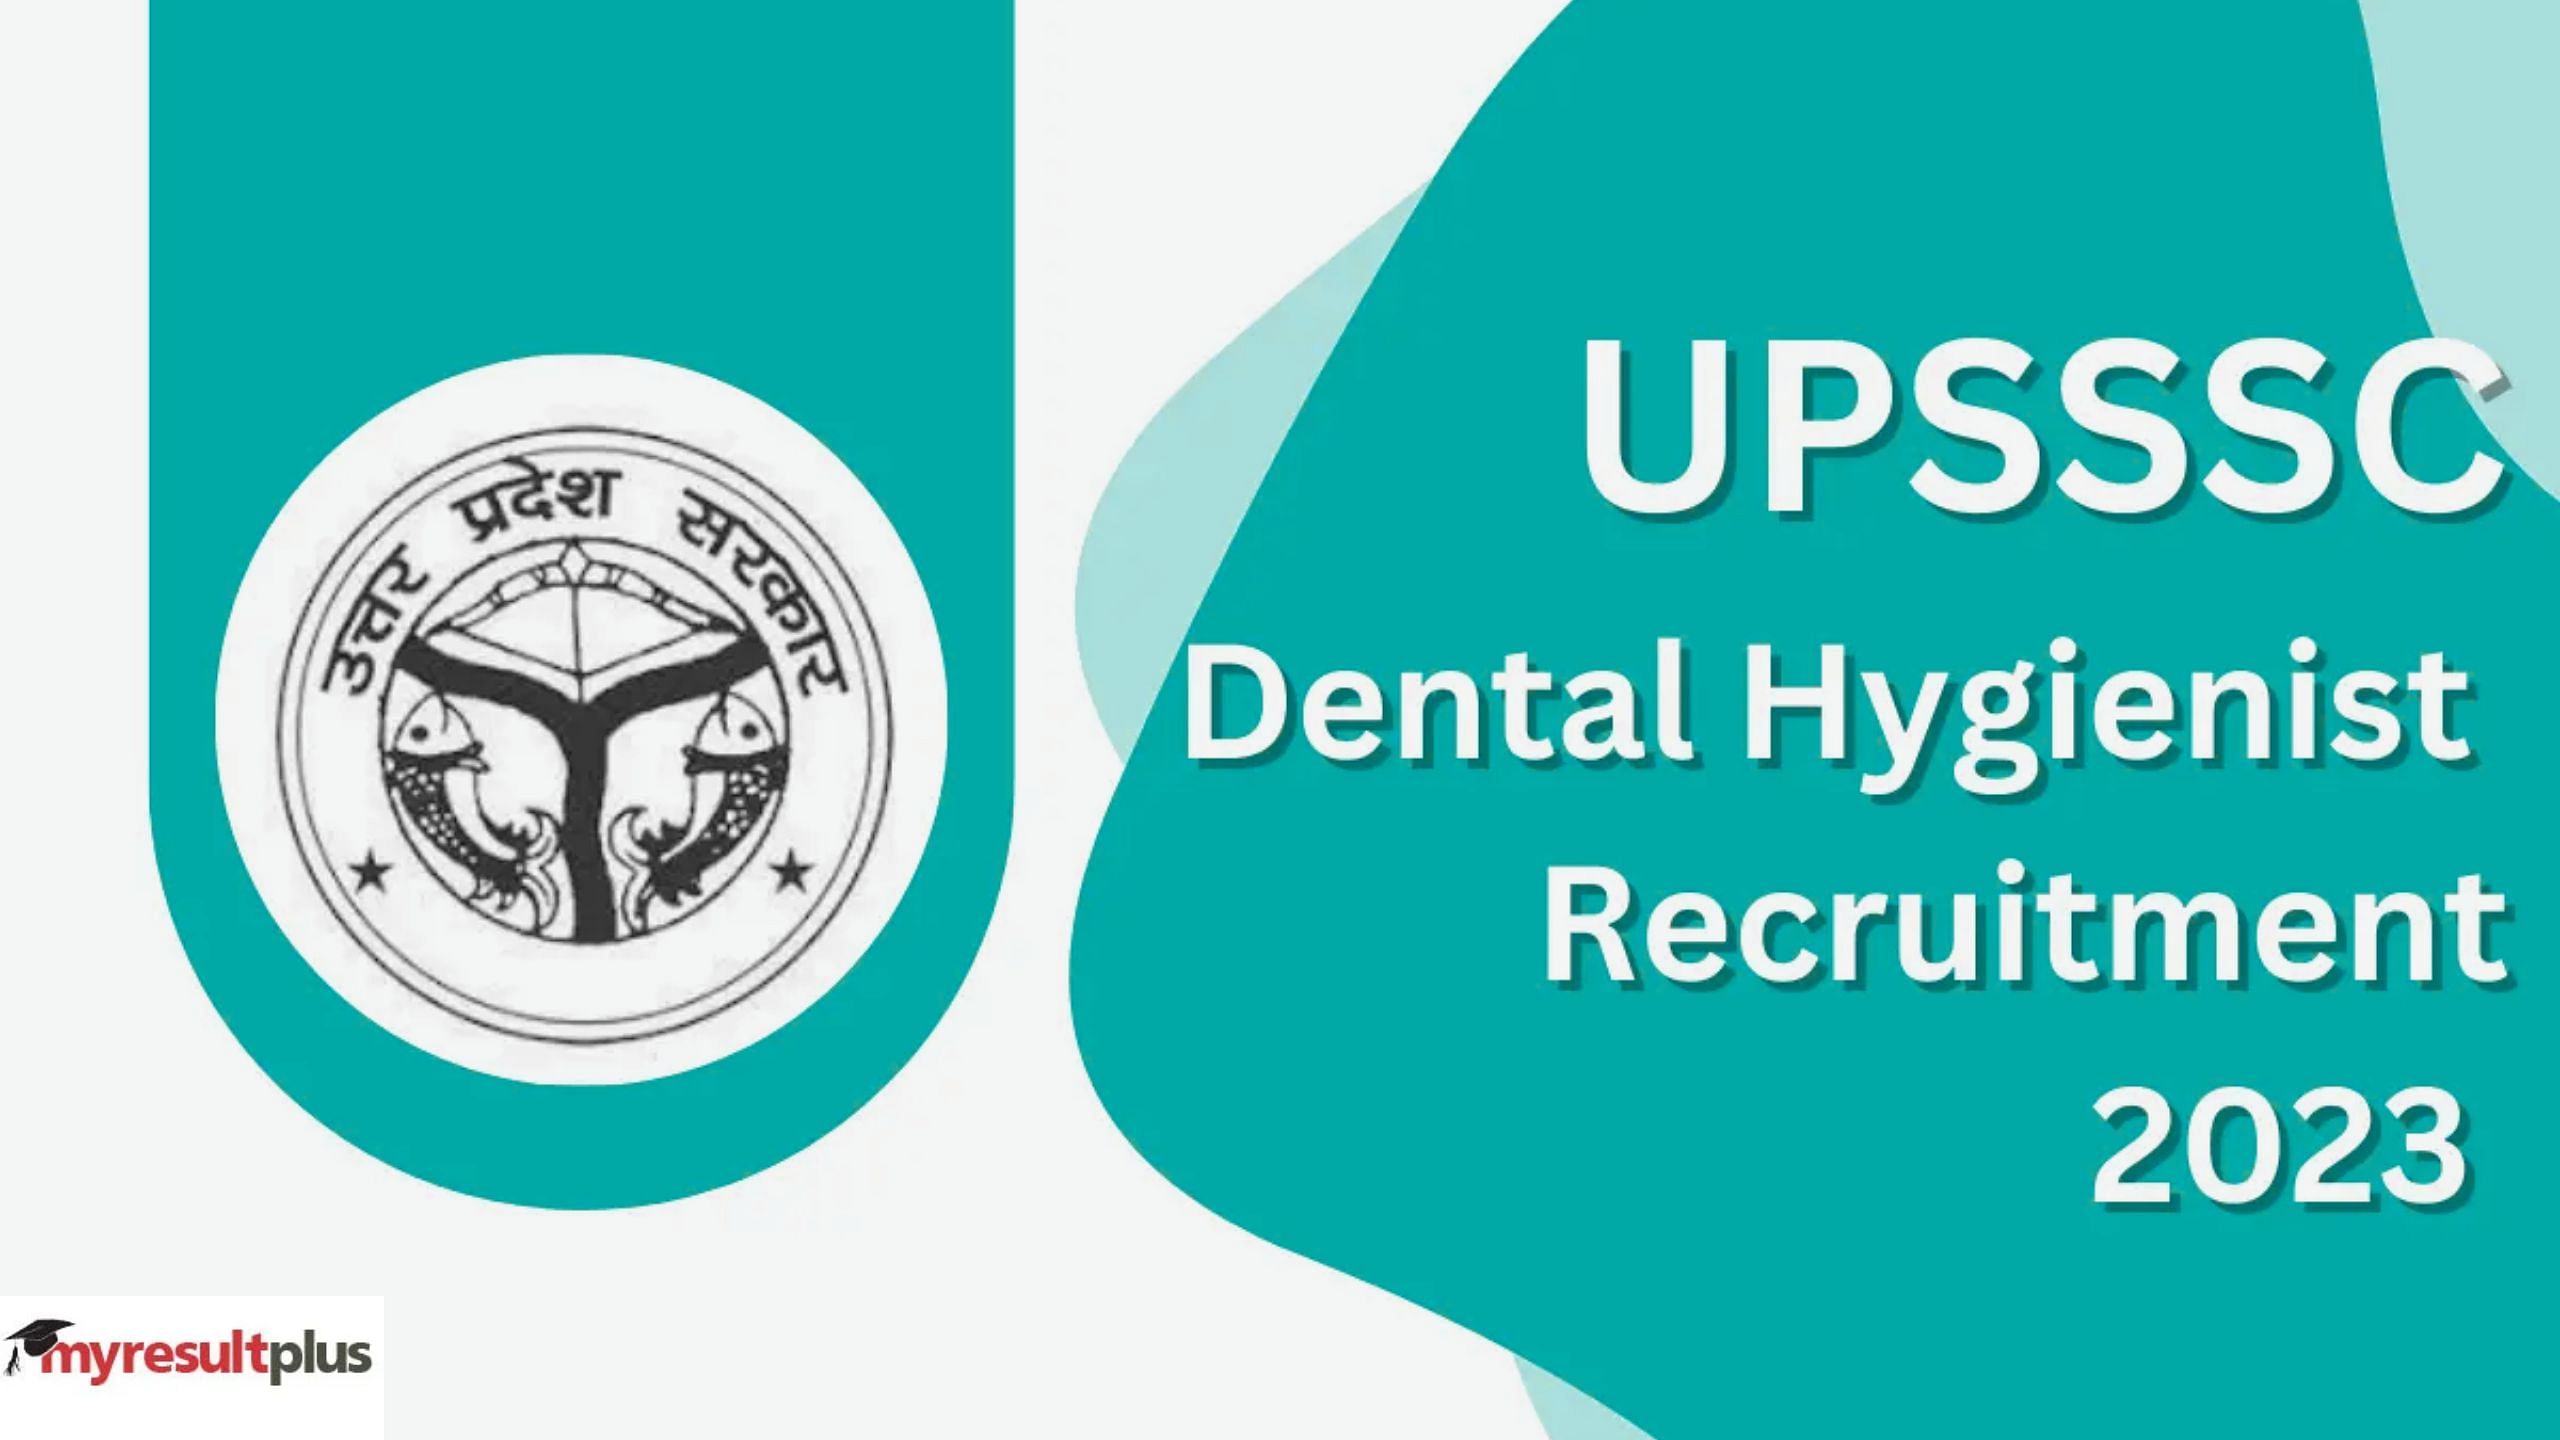 UPSSSC Dental Hygienist 2023: Registration Ends Today for 288 Posts at upsssc.gov.in, How to Apply